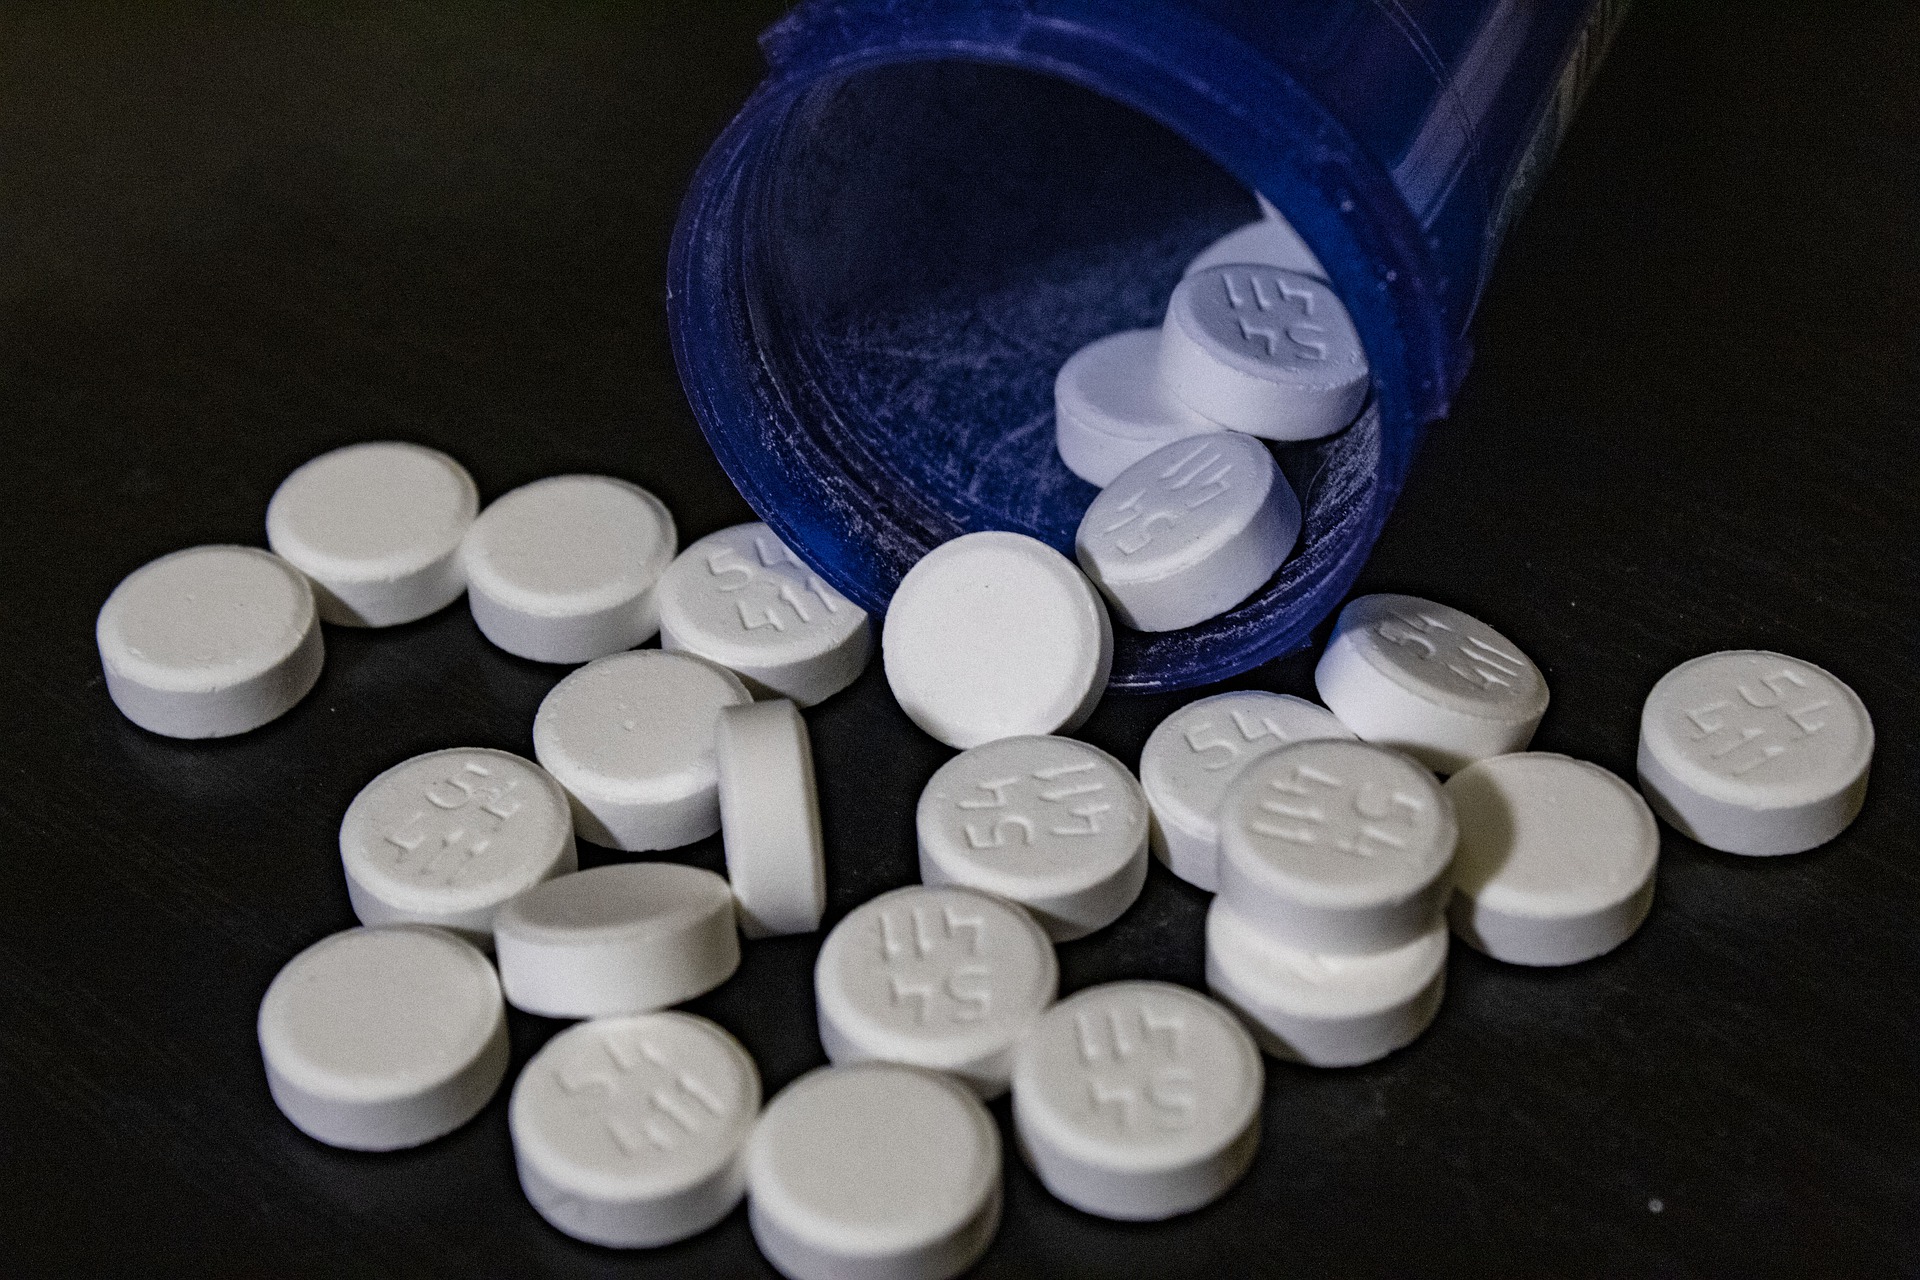 image showing pills